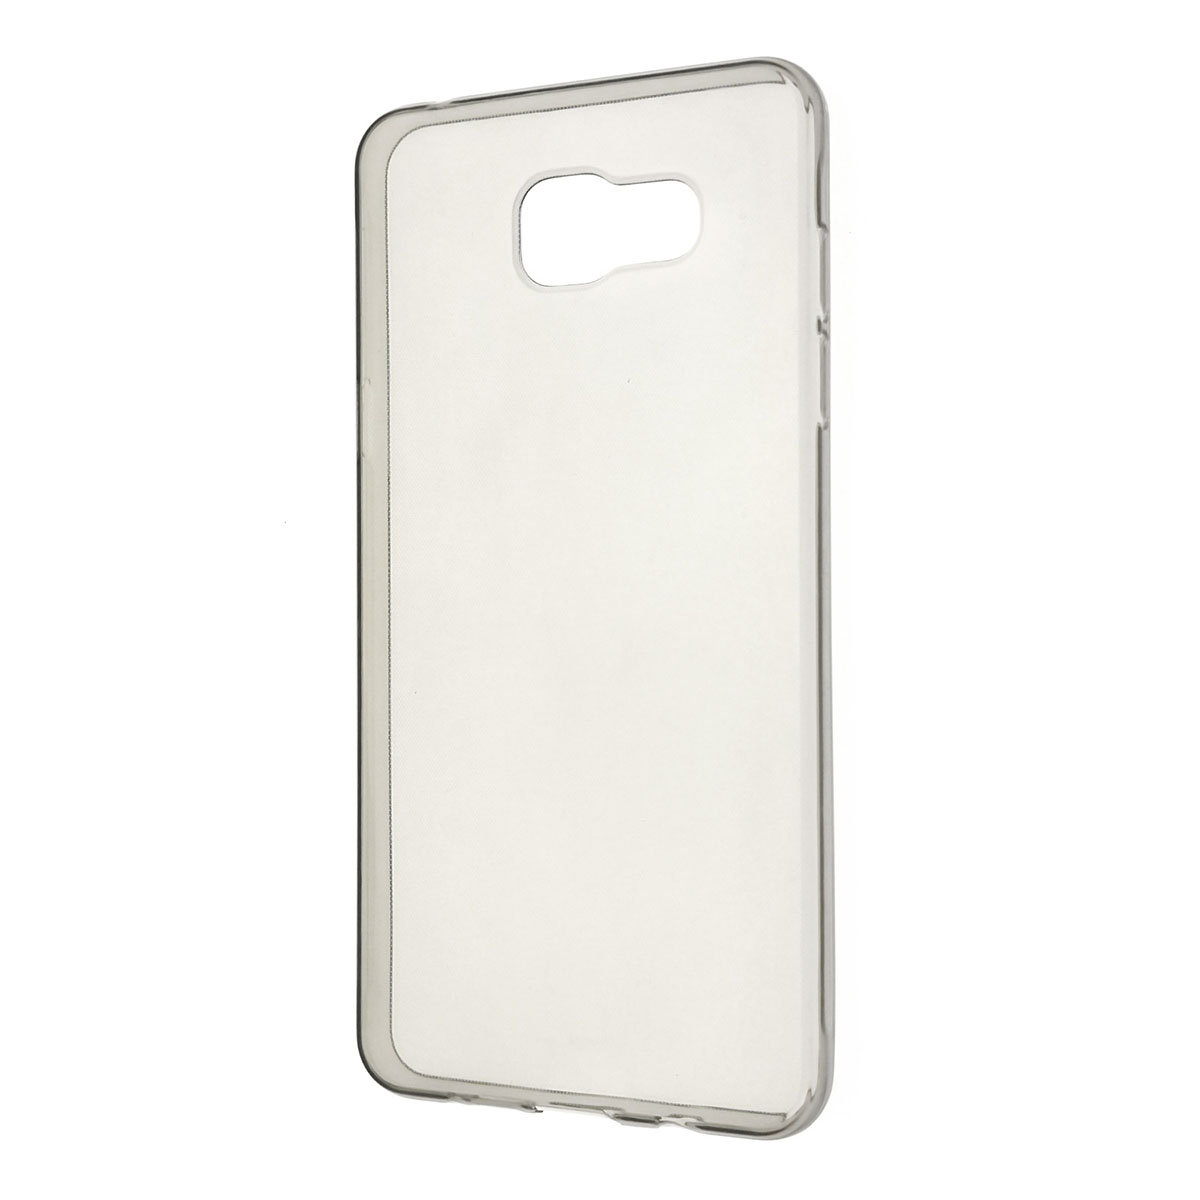 Чехол накладка для SAMSUNG Galaxy A5 2016, силикон, цвет прозрачный.